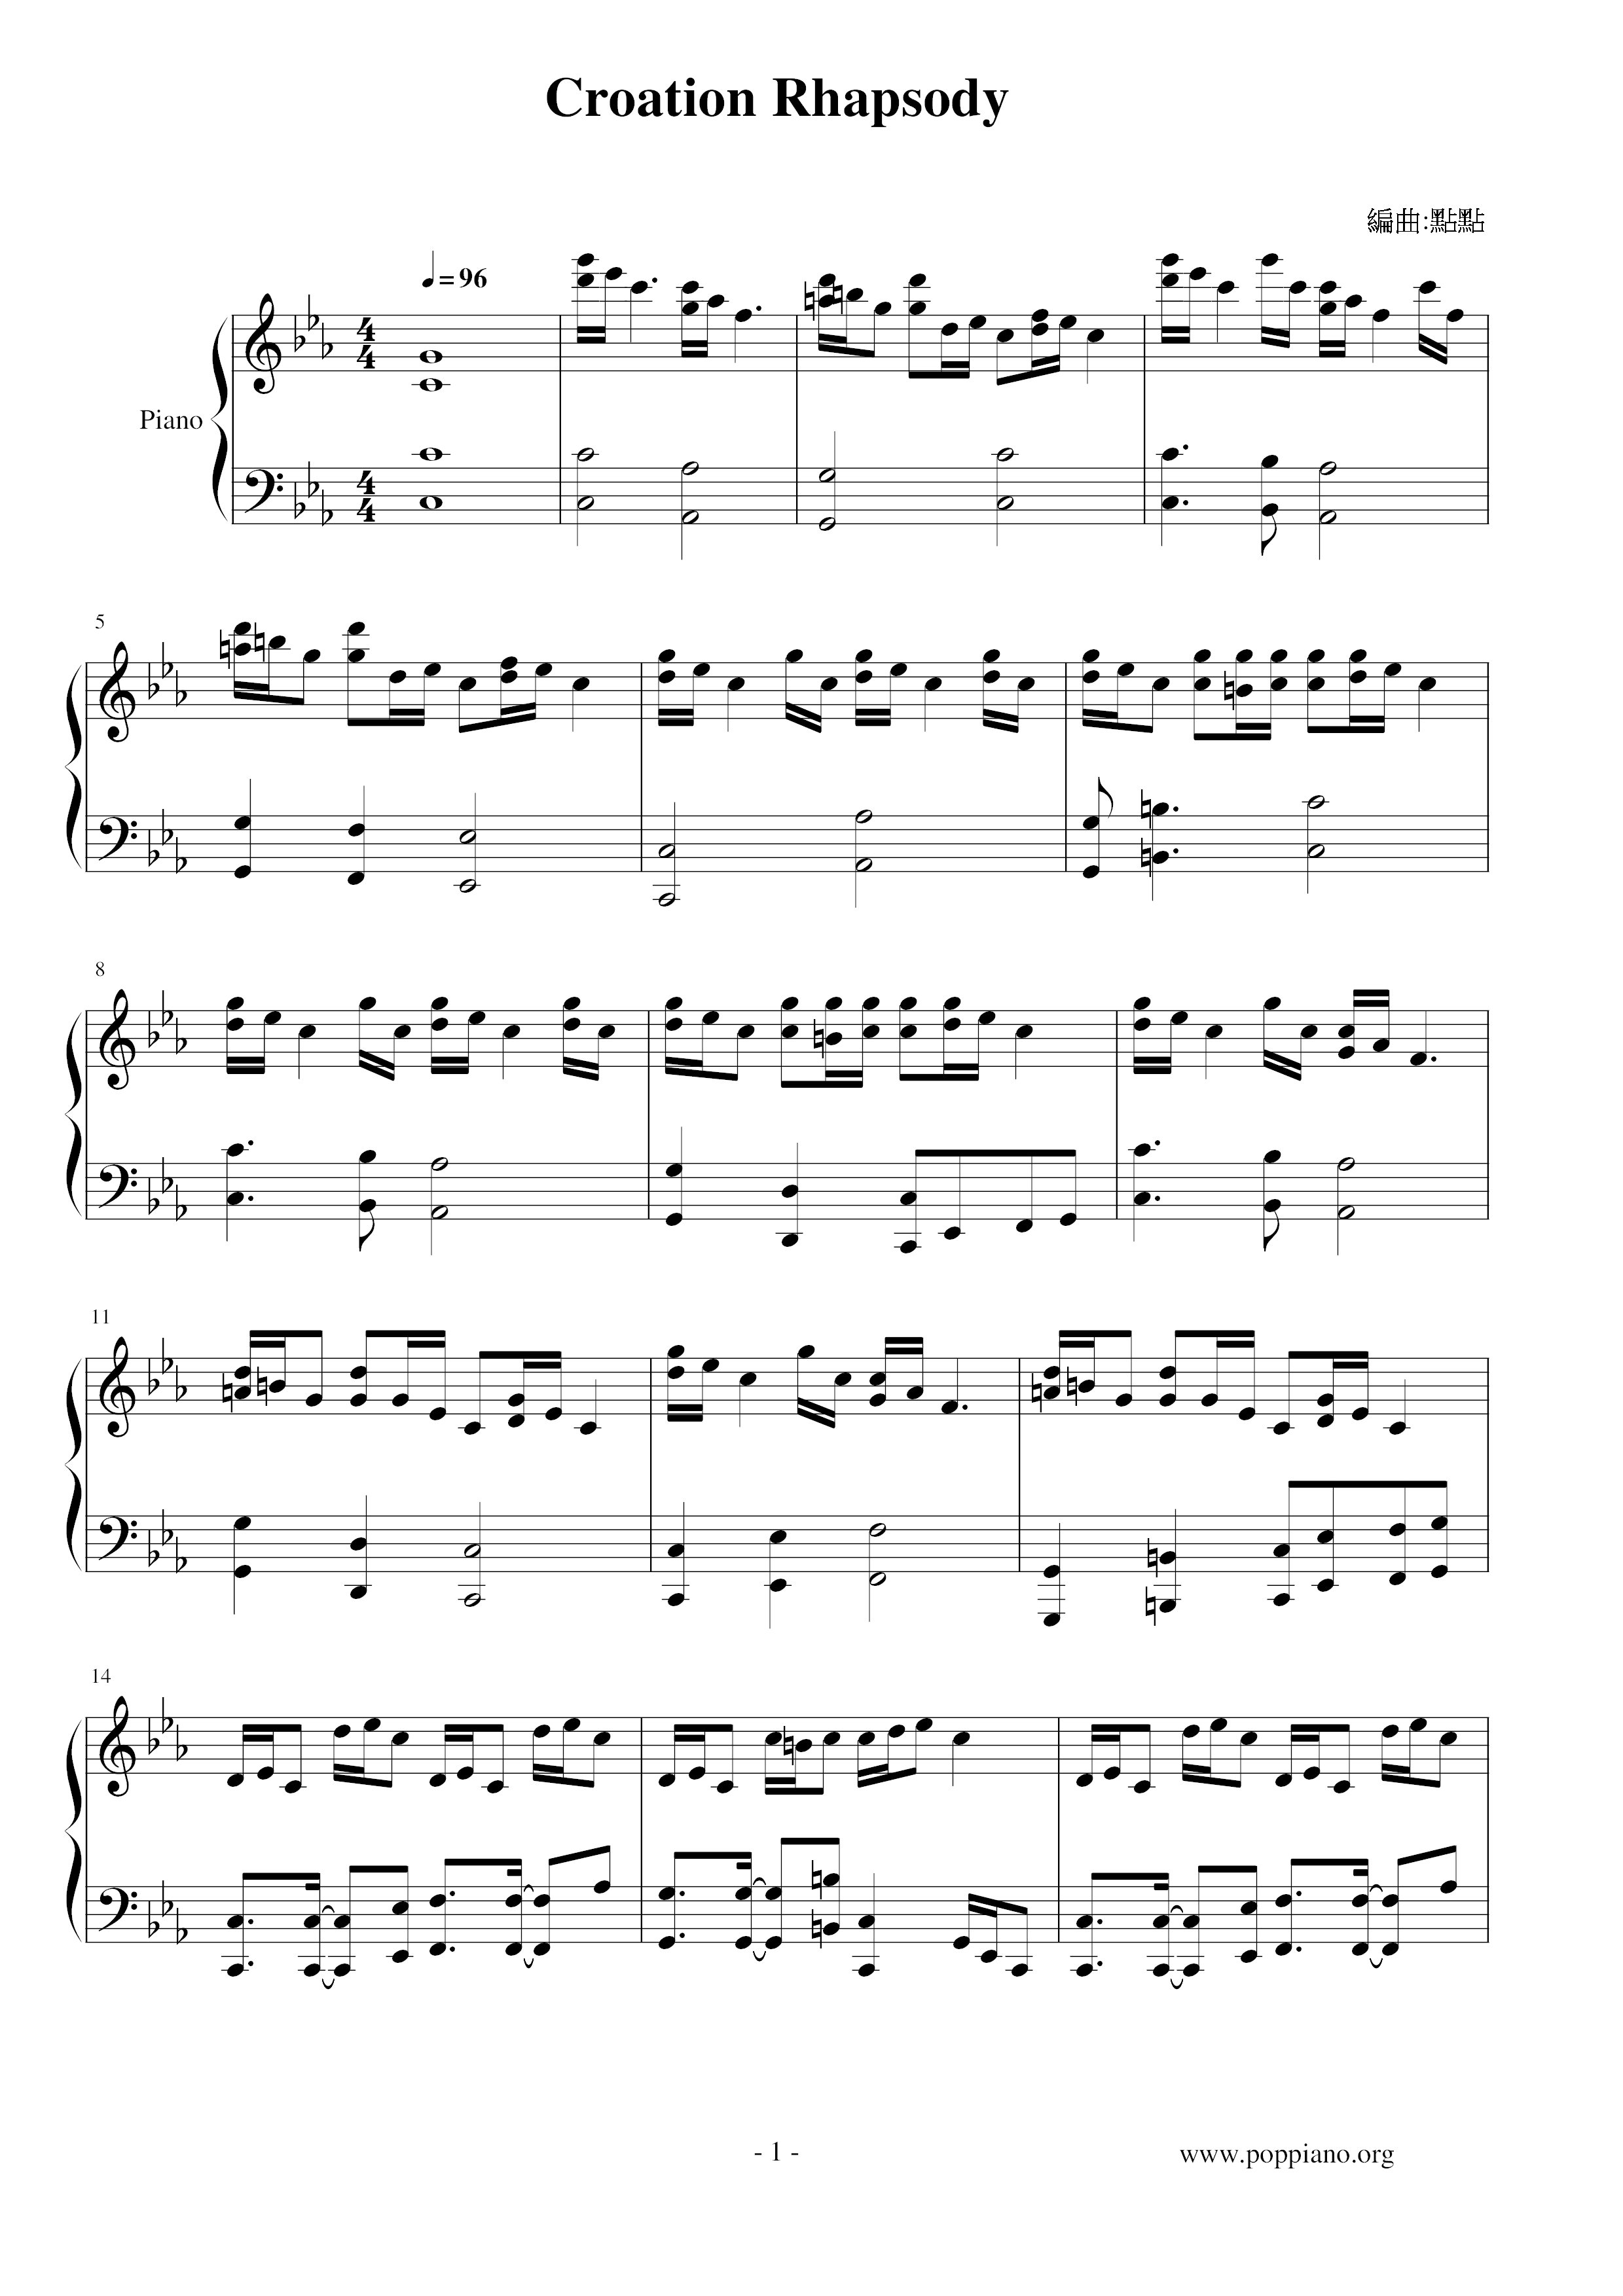 Croatian Rhapsody Score